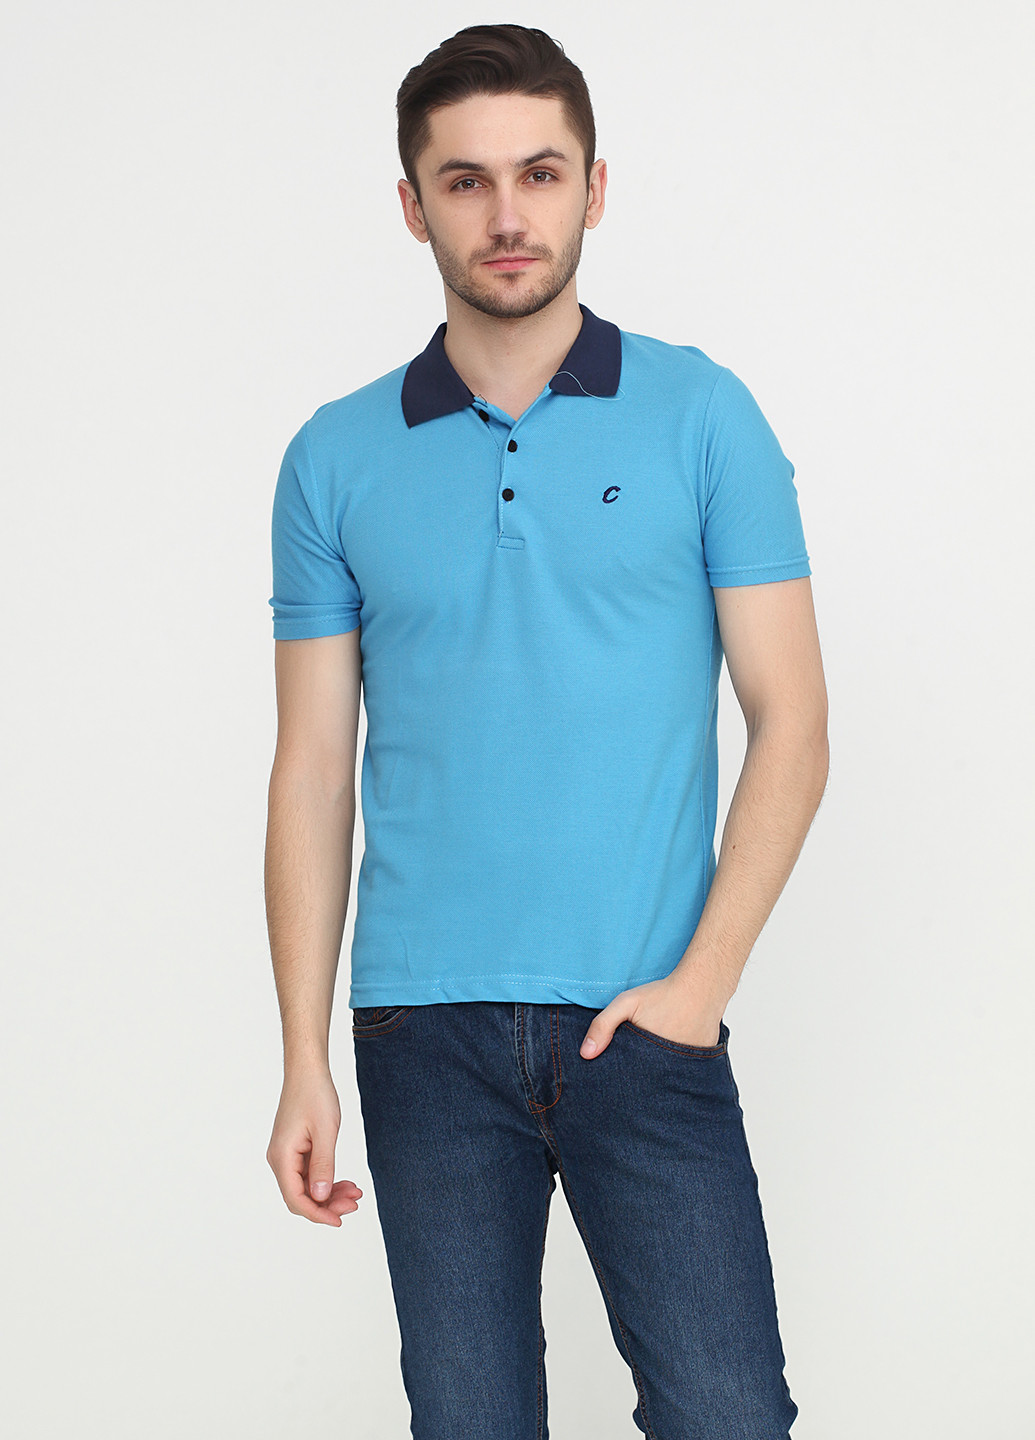 Голубой футболка-поло для мужчин Chiarotex с логотипом